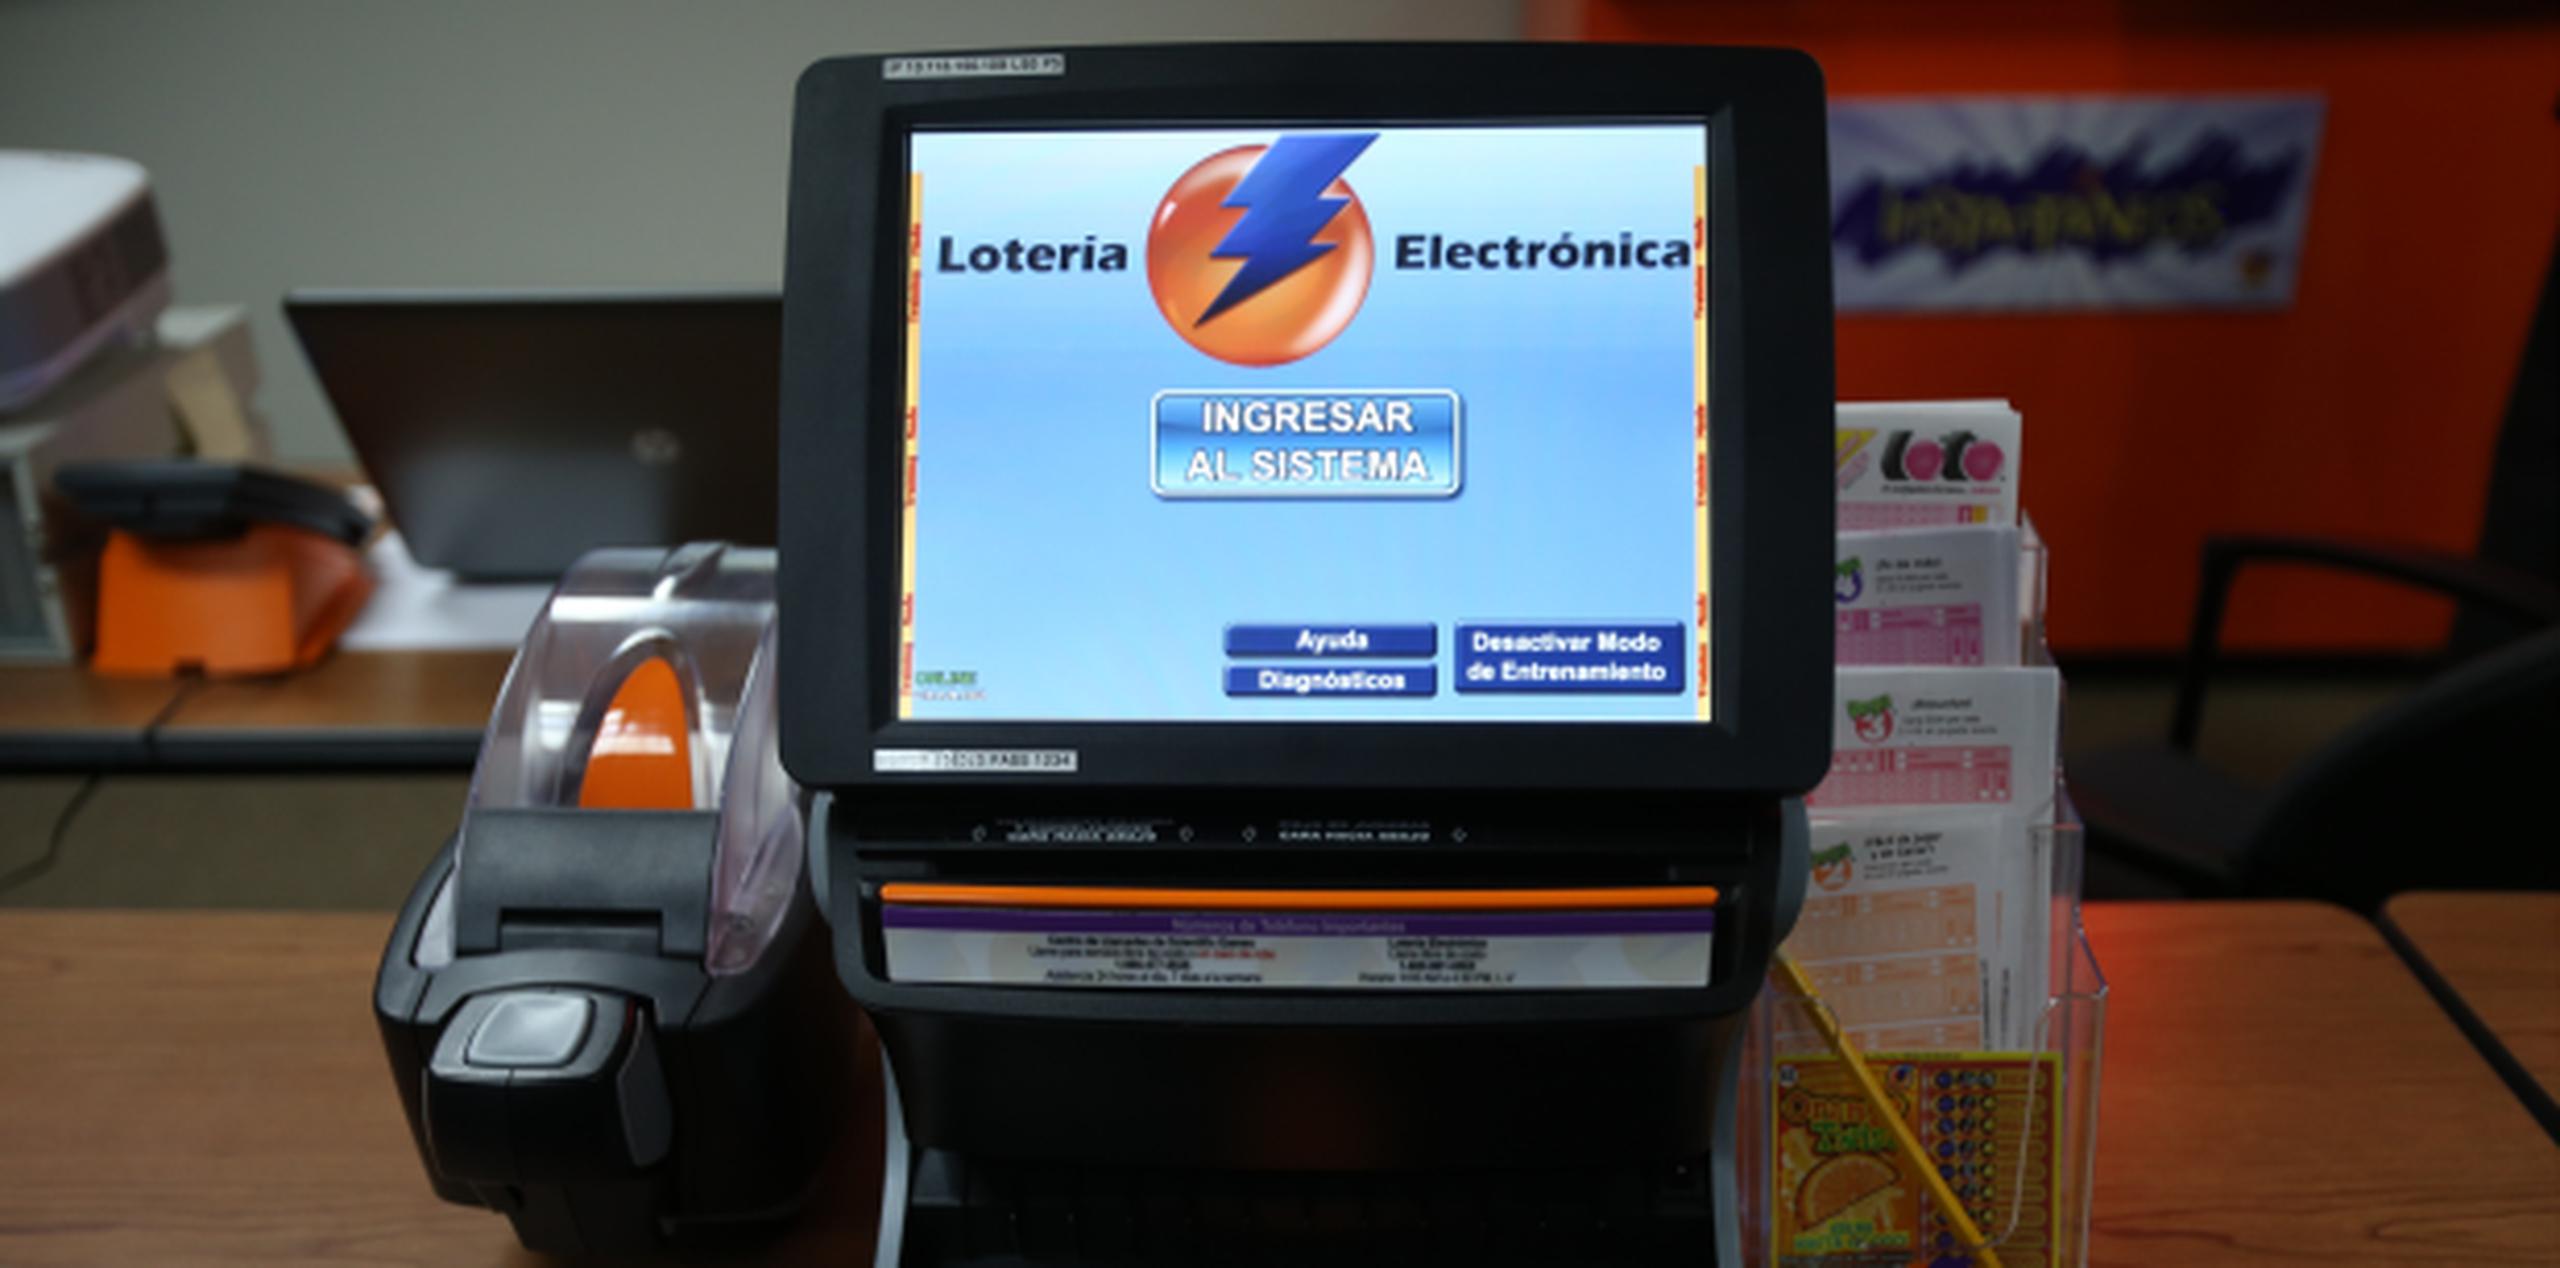 Los cerca de 1,850 vendedores de Lotería Electrónica debieron recibir ya la información sobre los nuevos sorteos ya que, según Carrión, “la información se bajó a los terminales y se les orientó”. (Archivo)